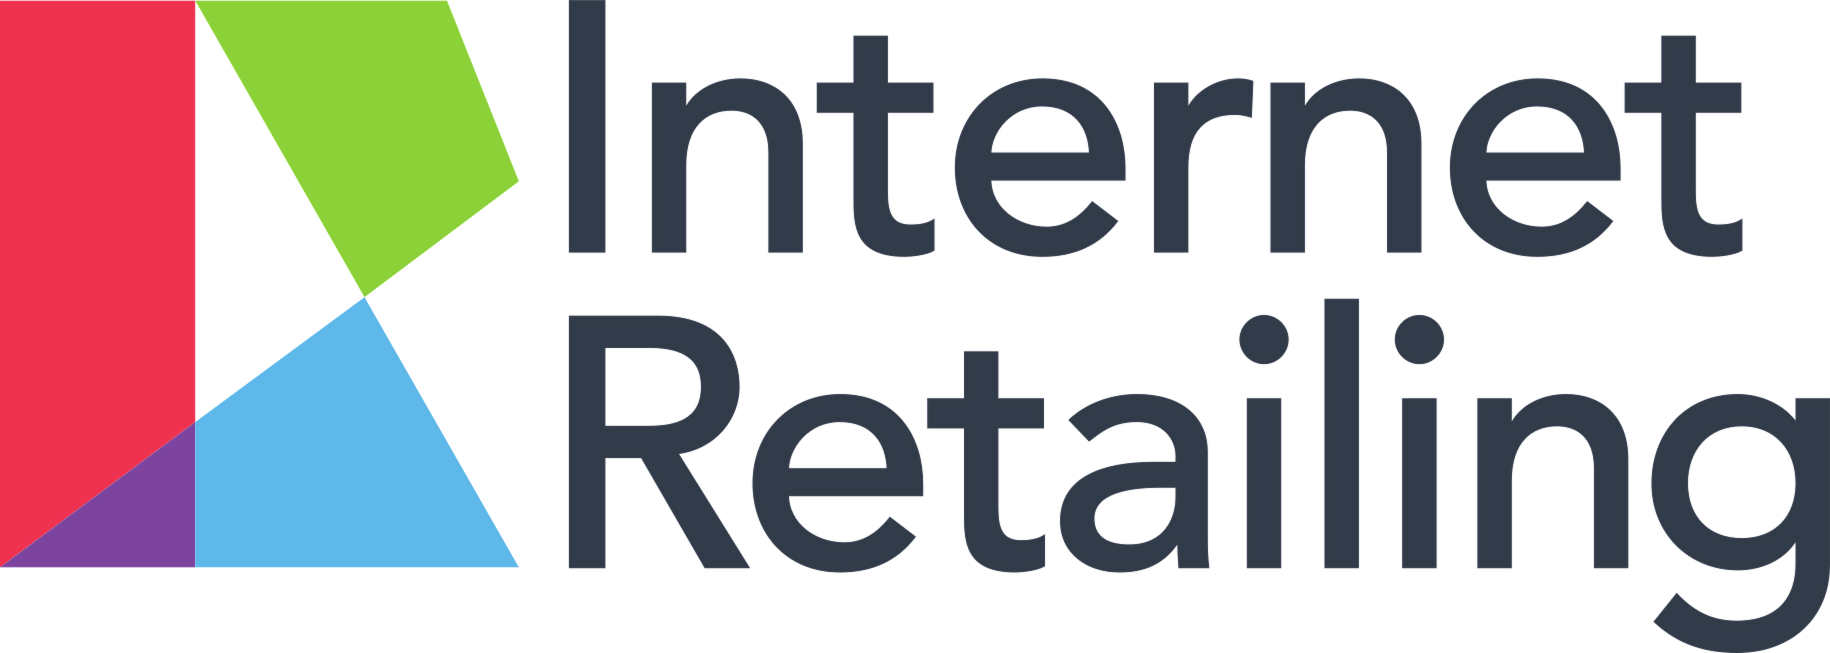 Internet retailing logo